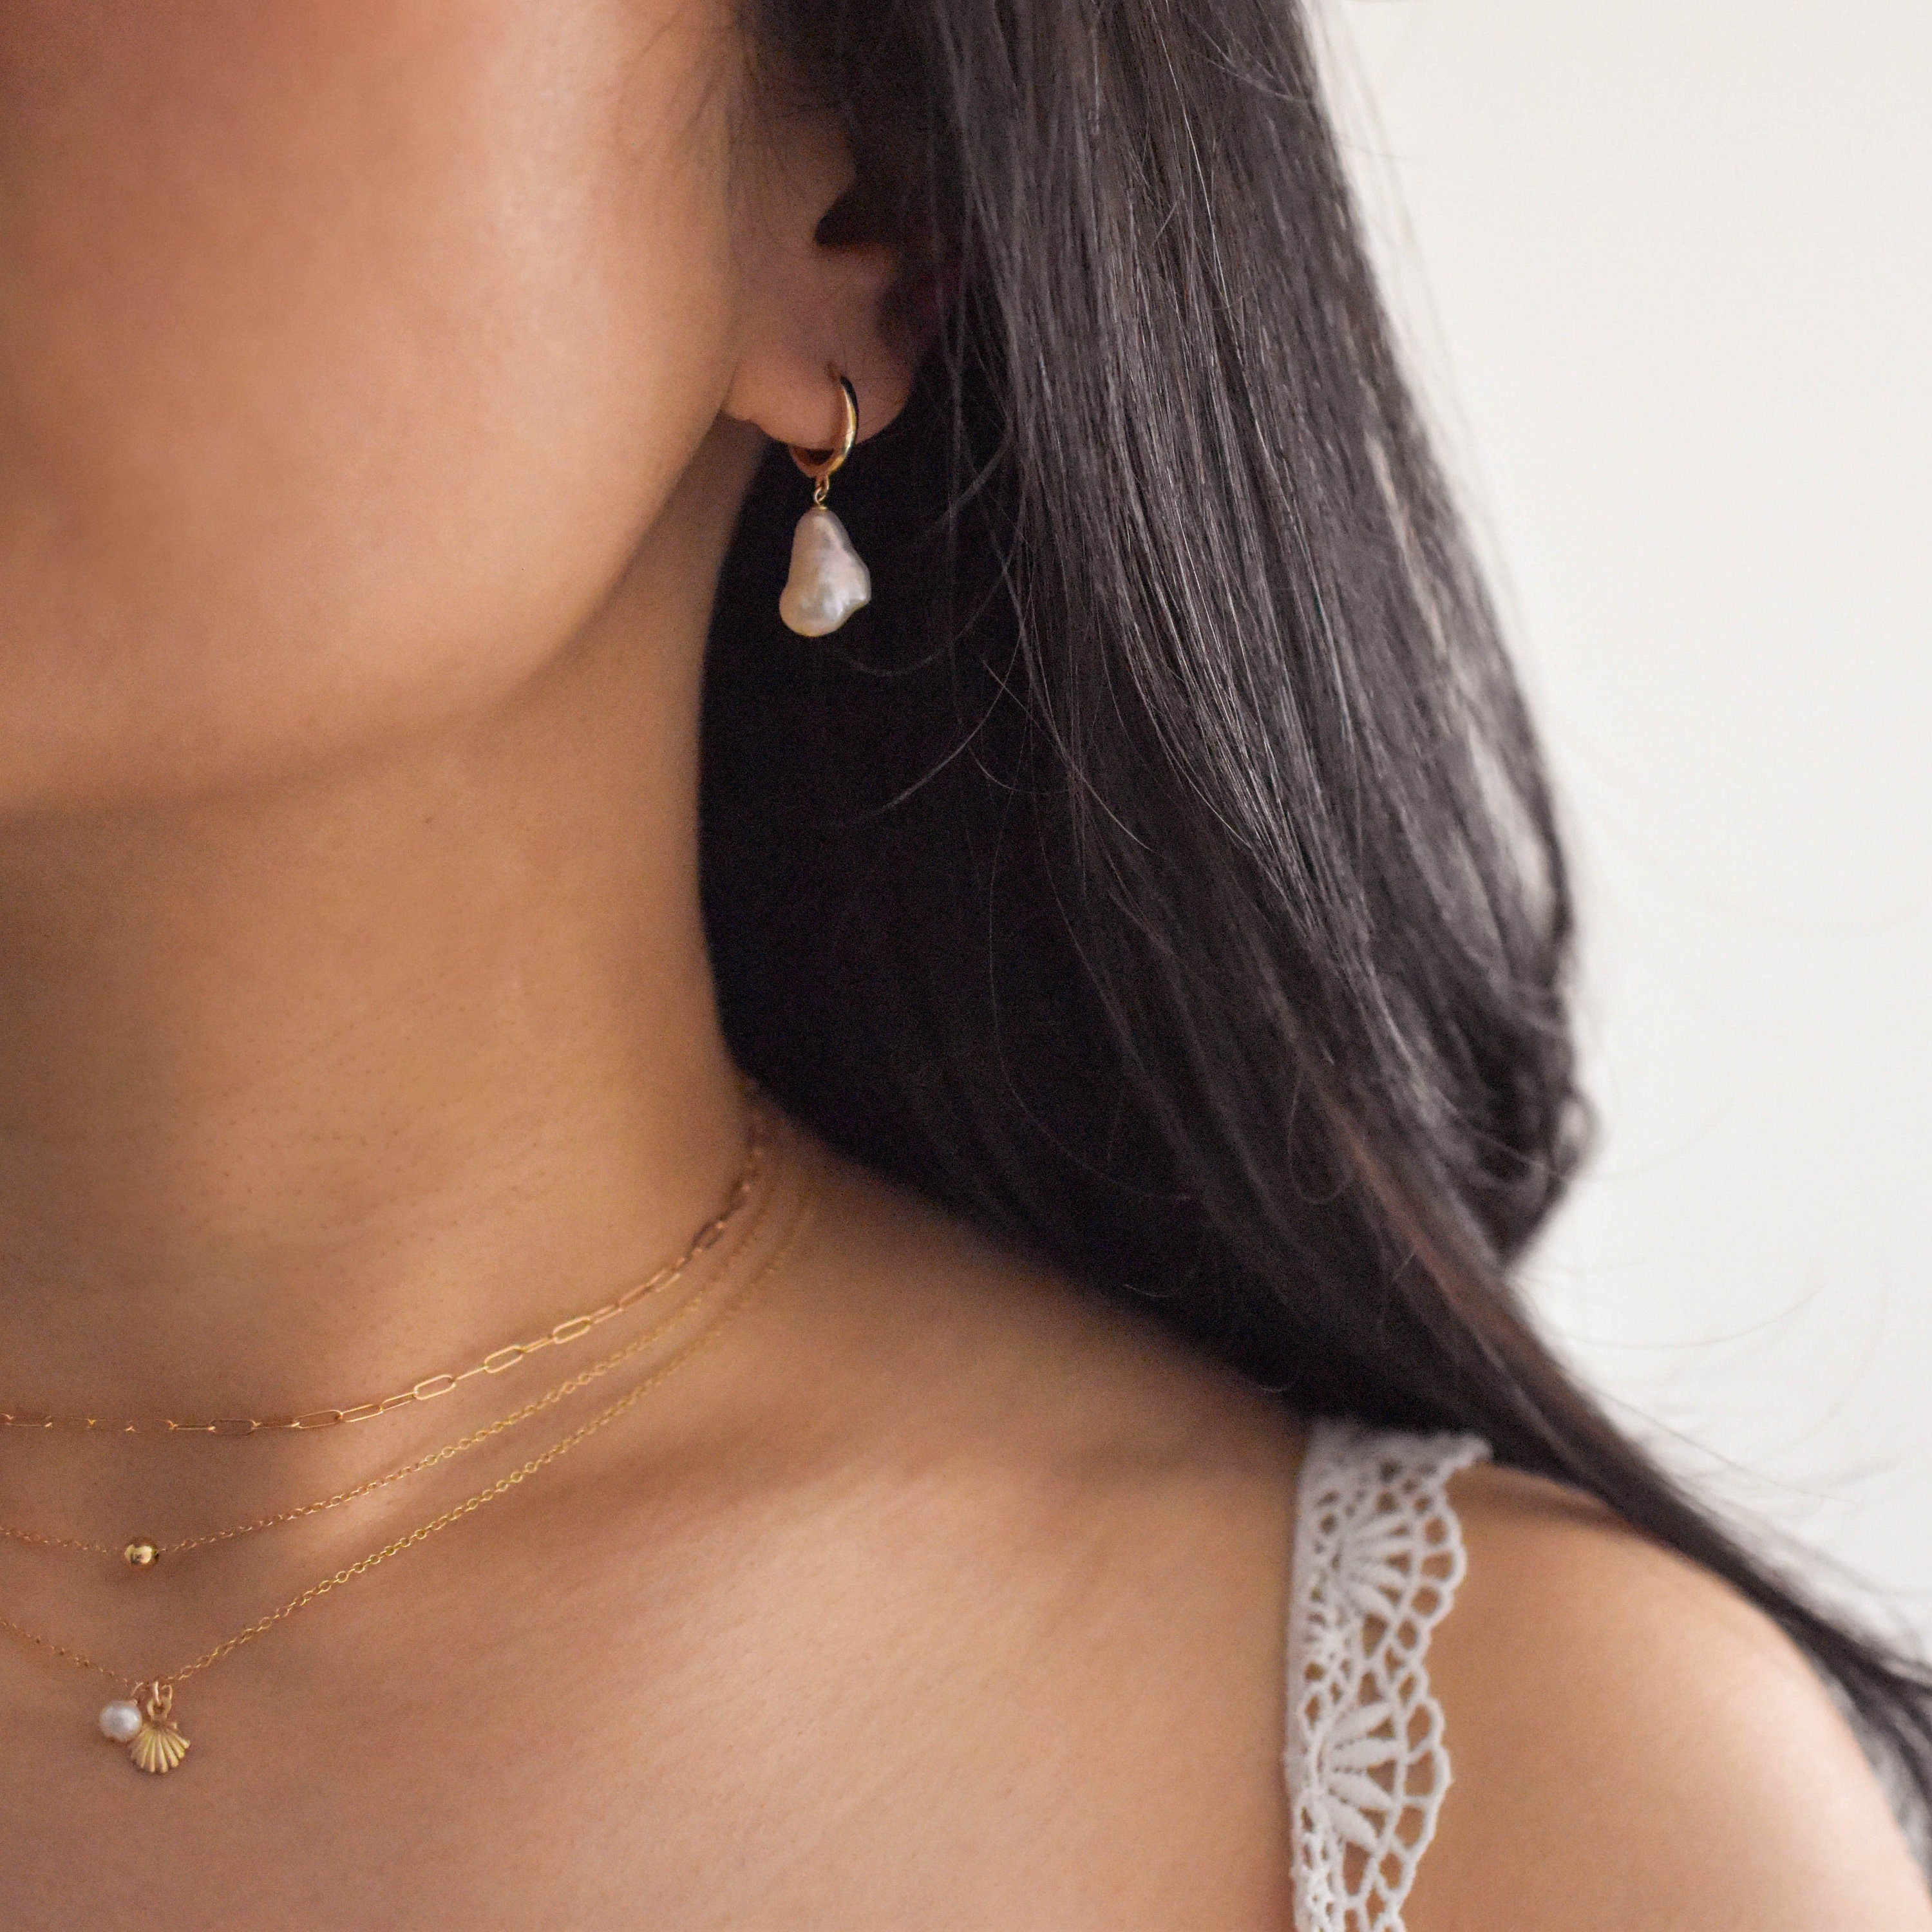 14k solid gold pearl hoop earrings - Real Gold Pearl Earrings, Real Gold Pearl Dangle Earrings, Solid Gold Pearl Earrings